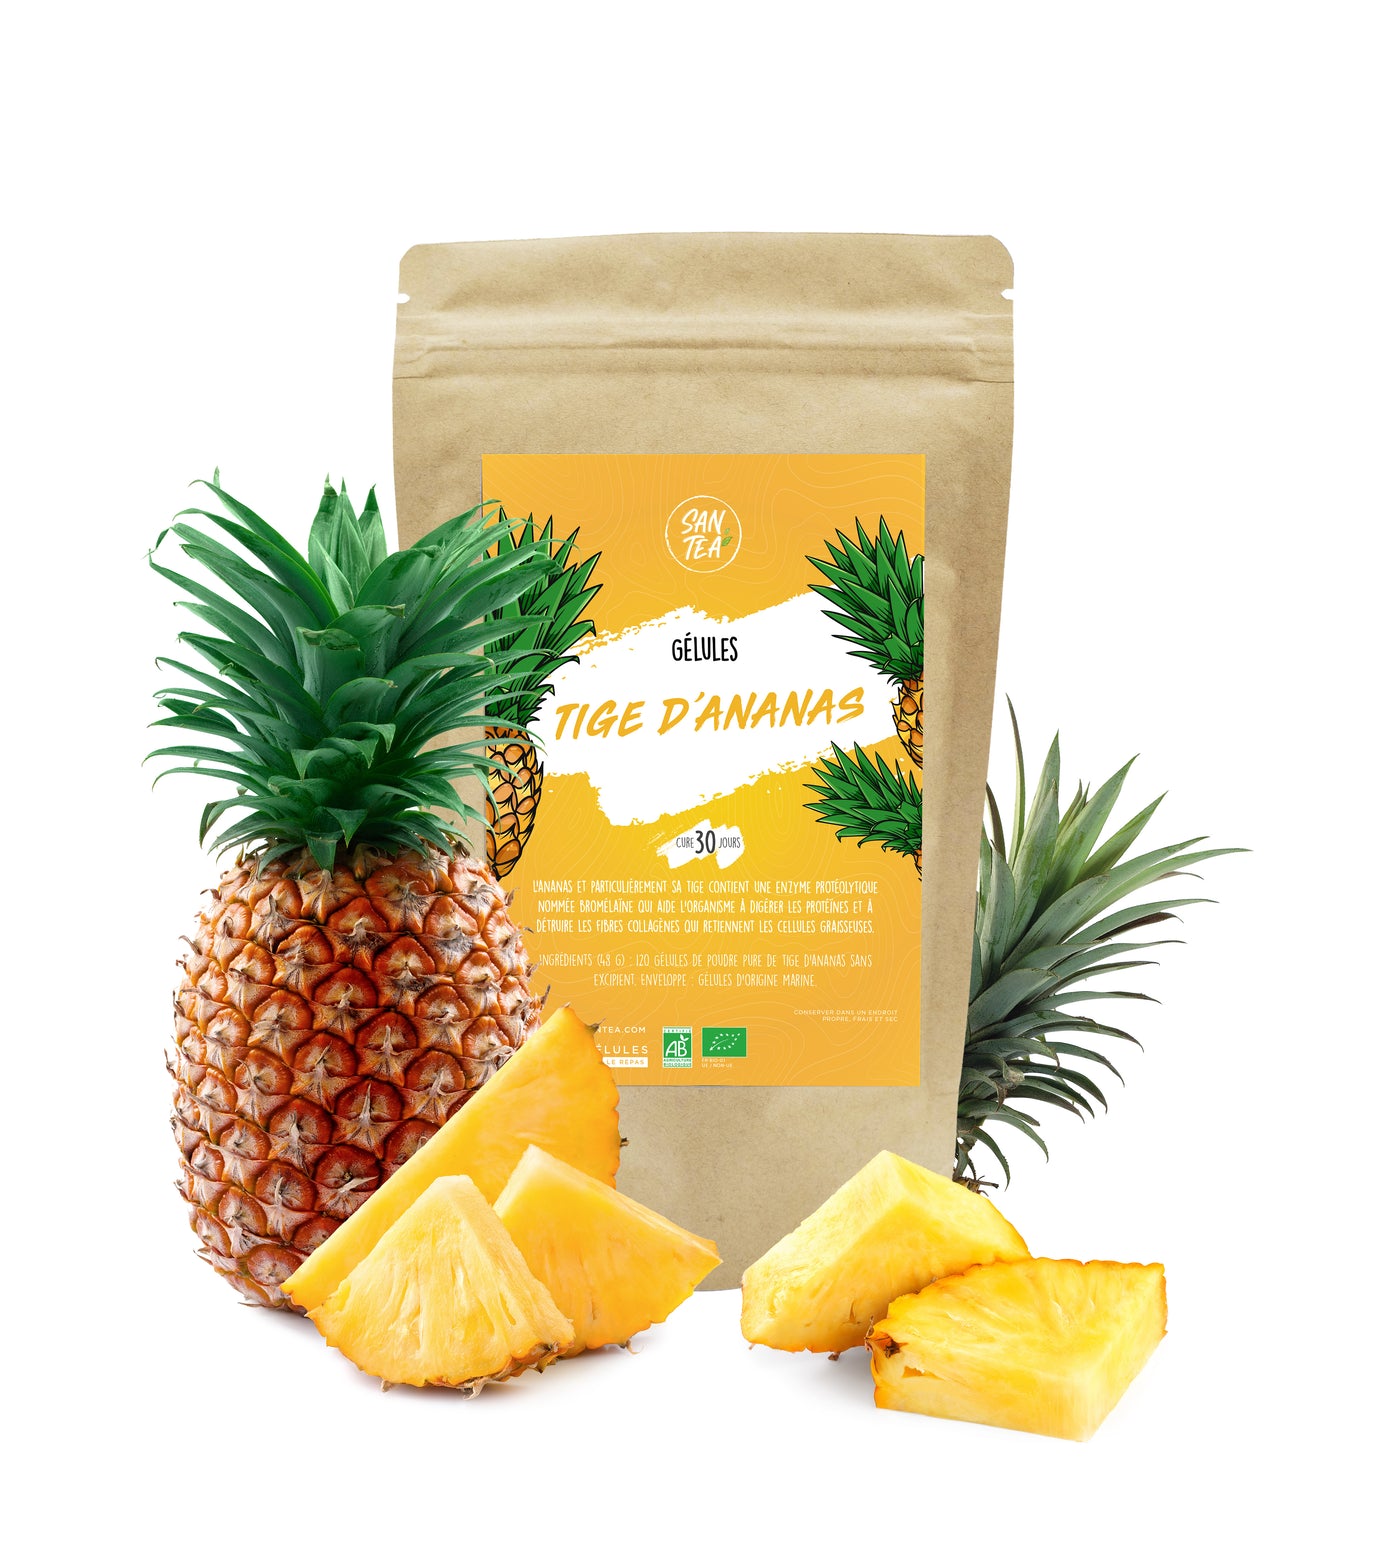 Gélules tige d'ananas (brûle graisses) : cure de 30 jours (120 gélules)